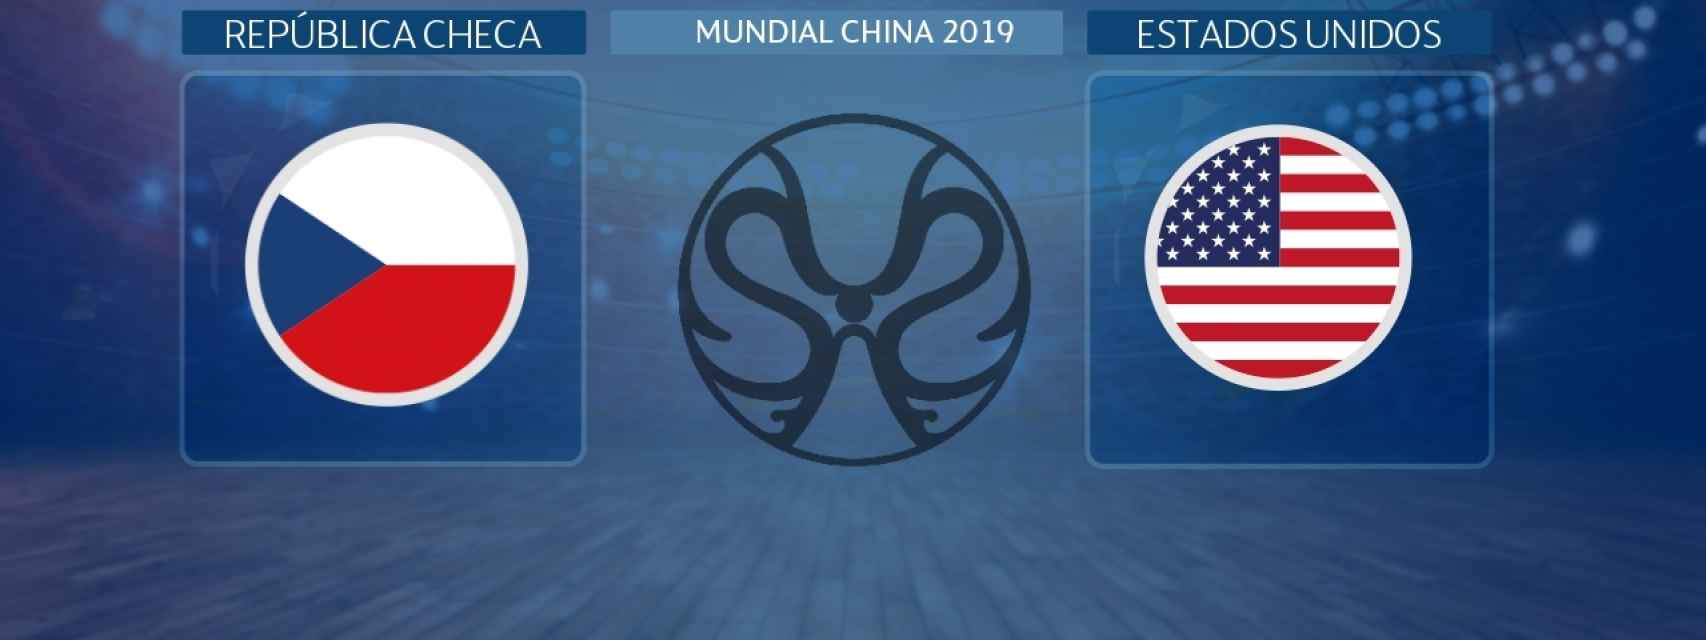 República Checa - Estados Unidos: siga en directo el partido del Mundial China 2019